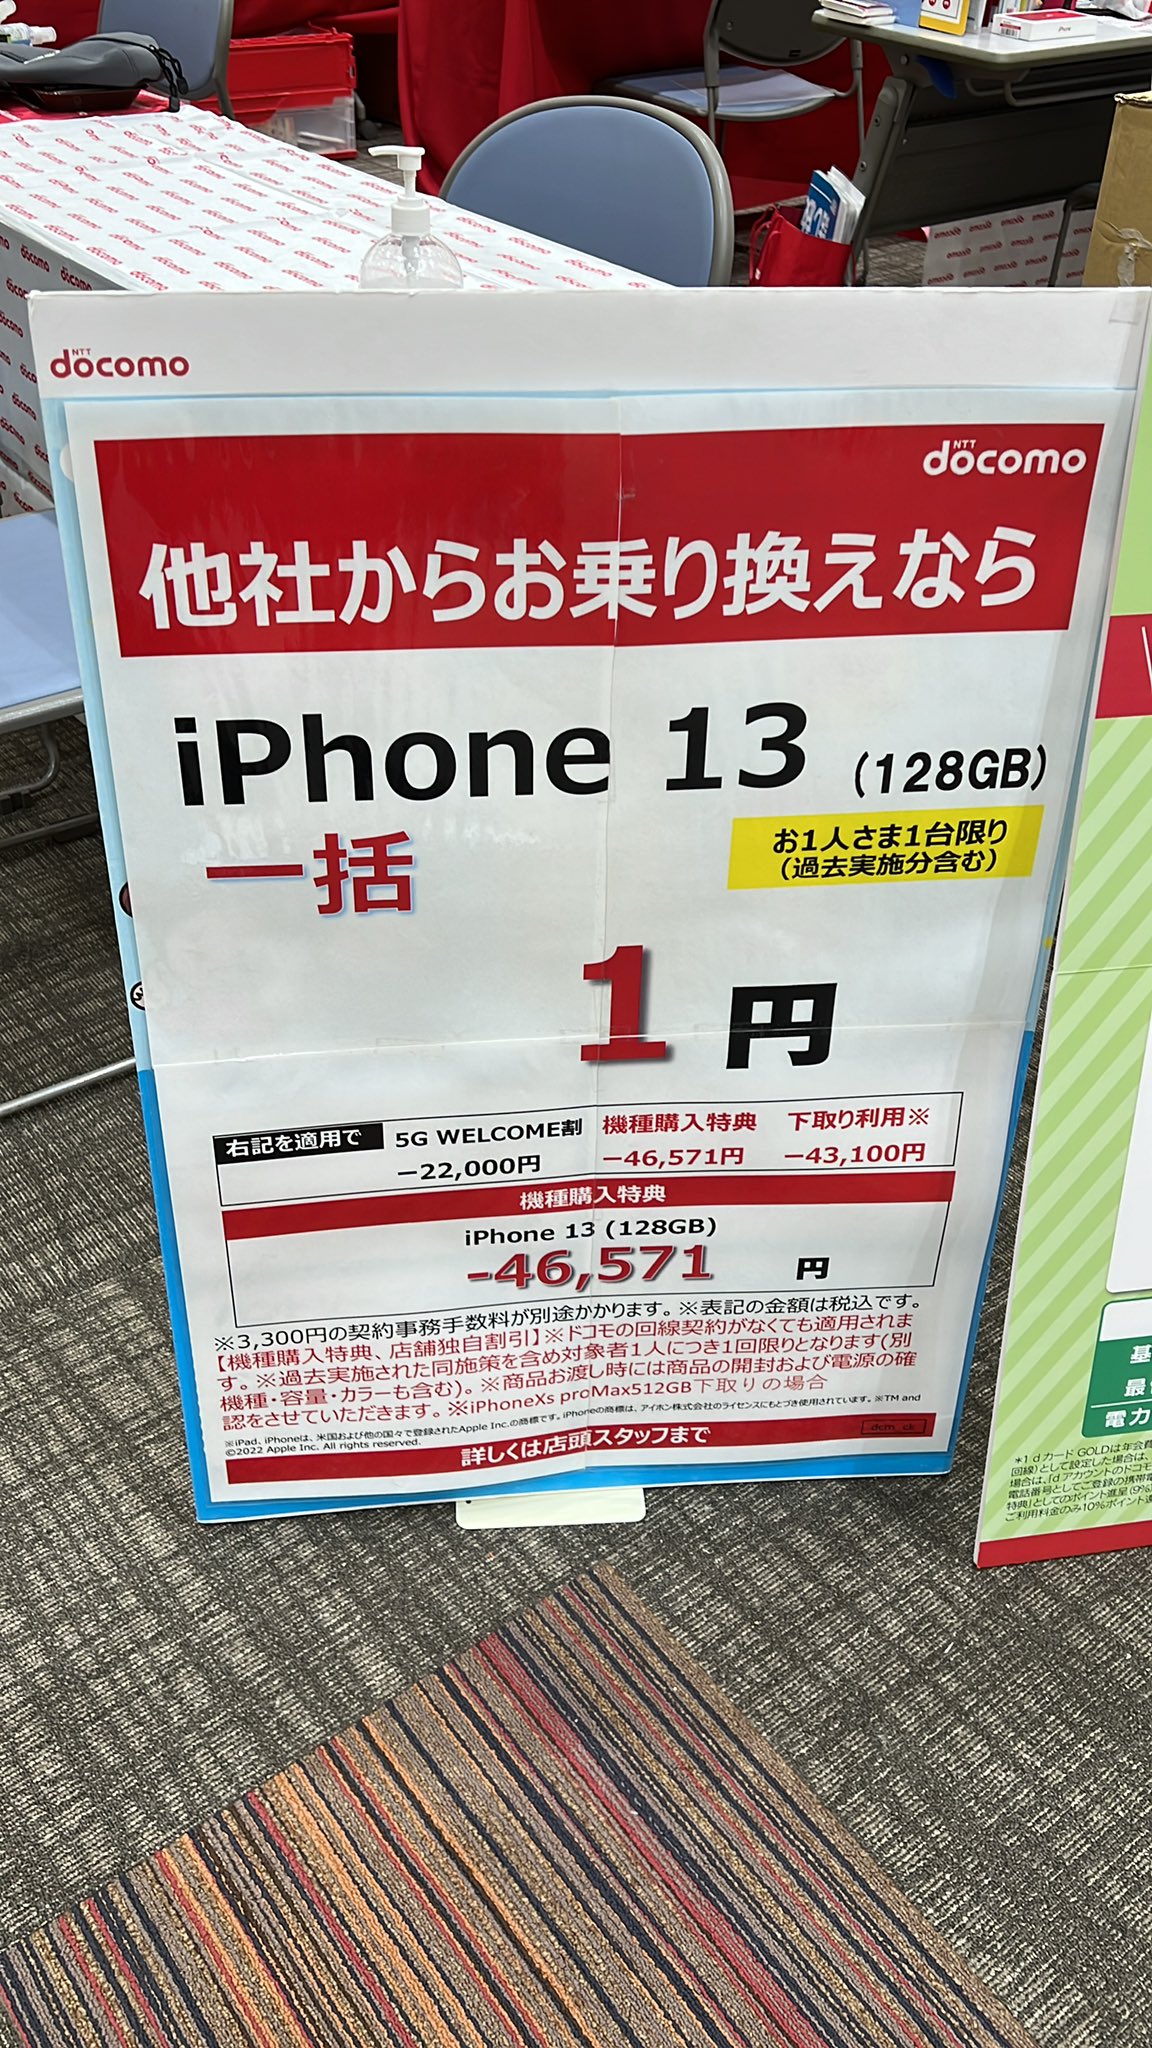 Iphone13 Iphone13pro グリーン 乗換 Mnp 一括1円 0円 9月10月 以降もproはキャッシュバックあり 携帯情報 コム